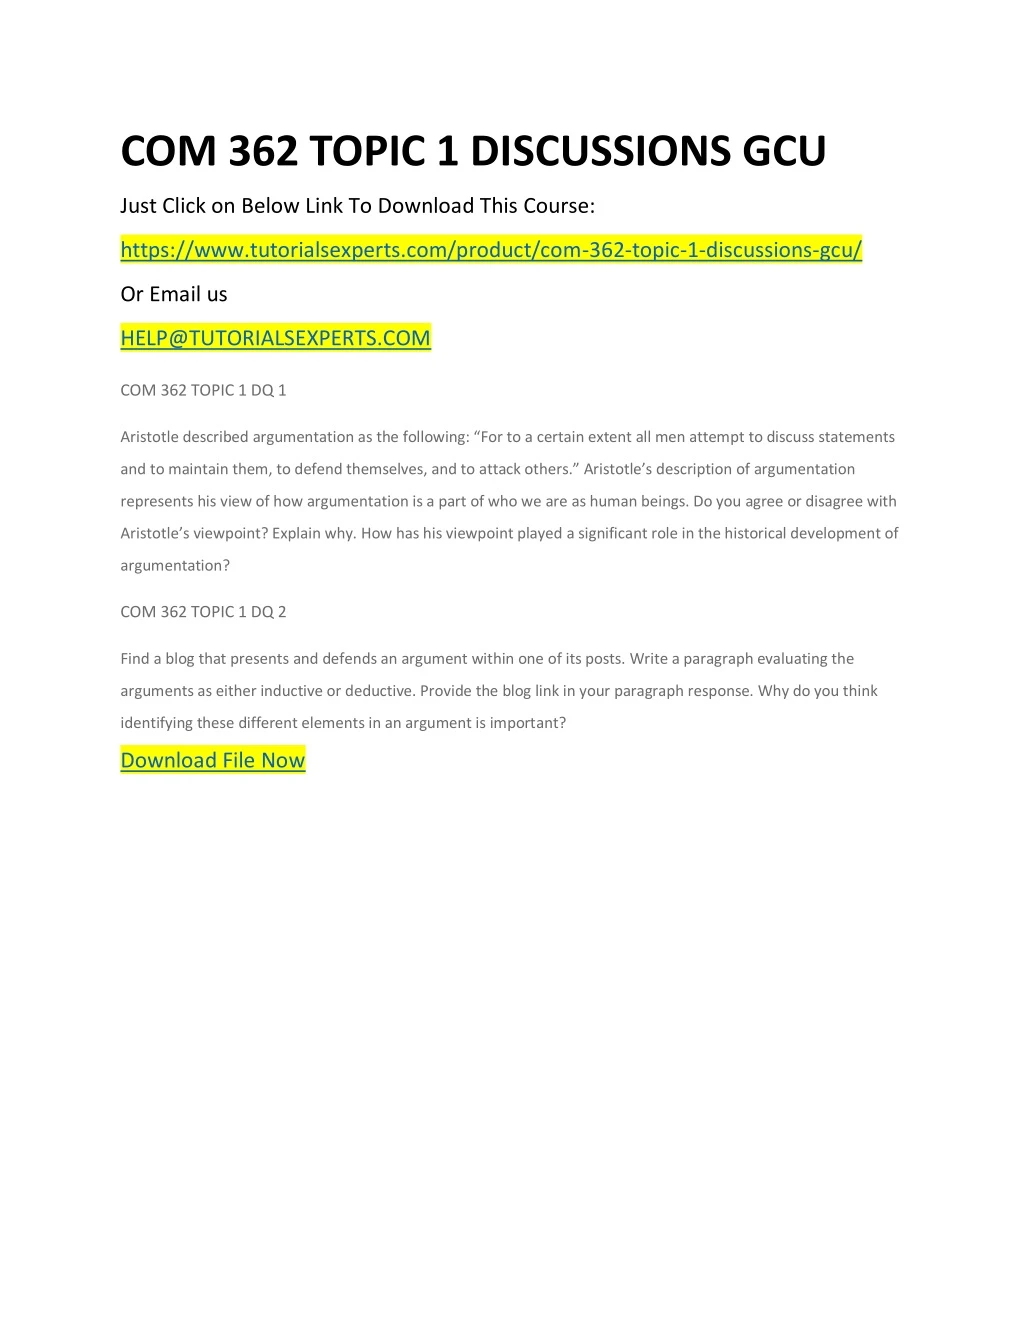 com 362 topic 1 discussions gcu